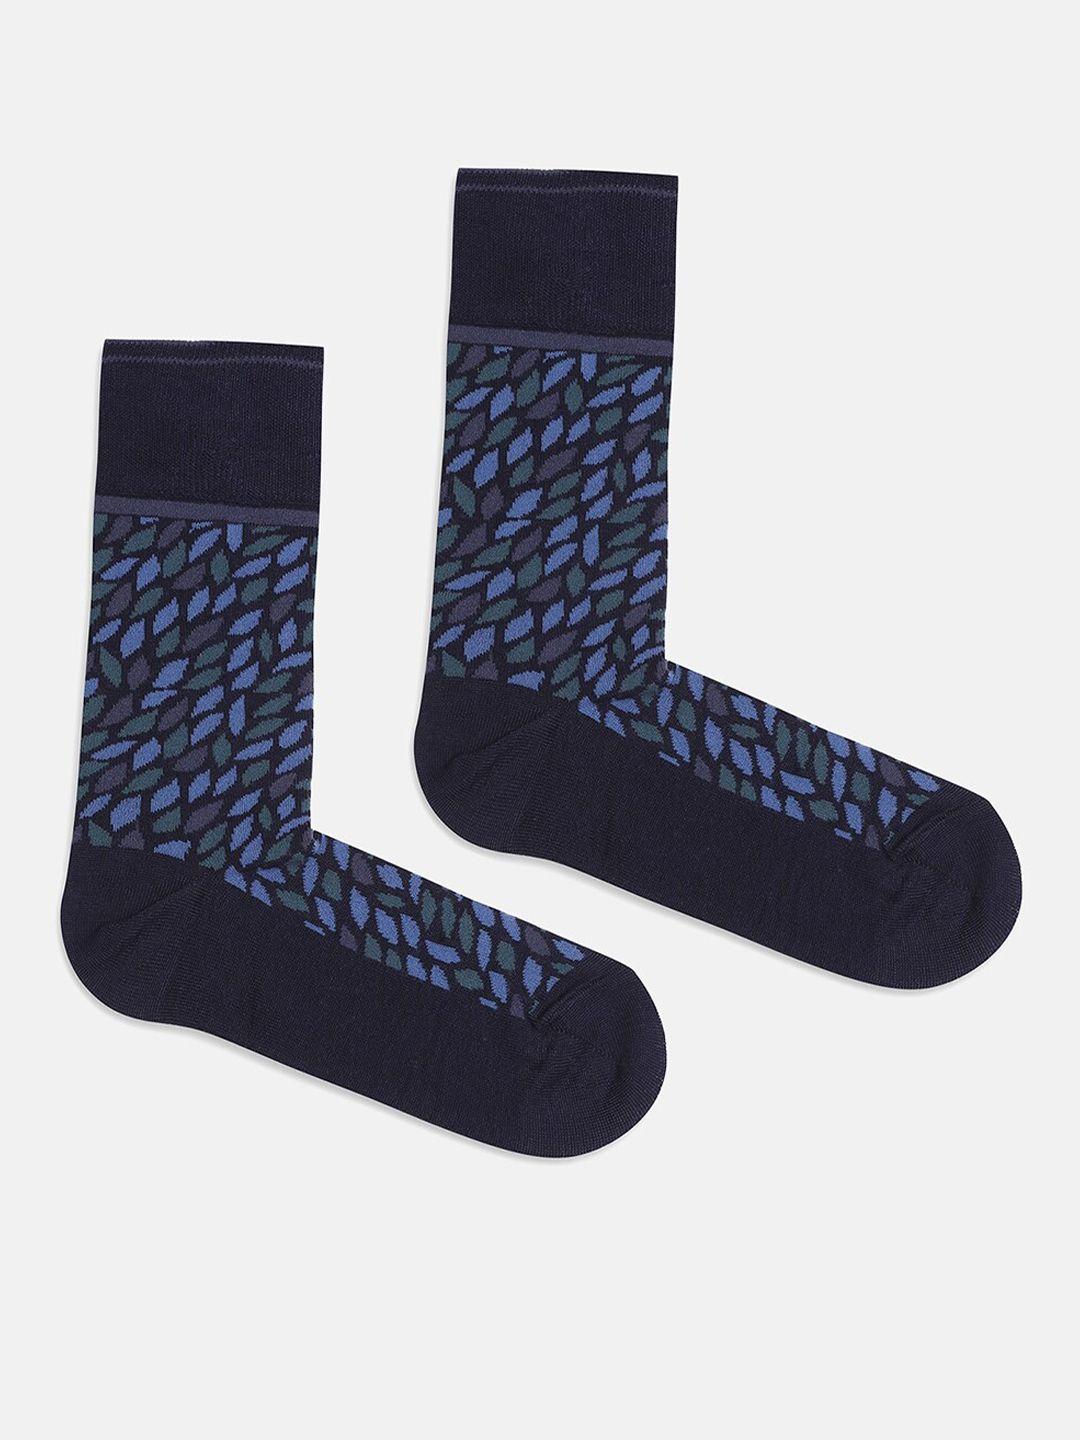 blackberrys men patterned calf length socks